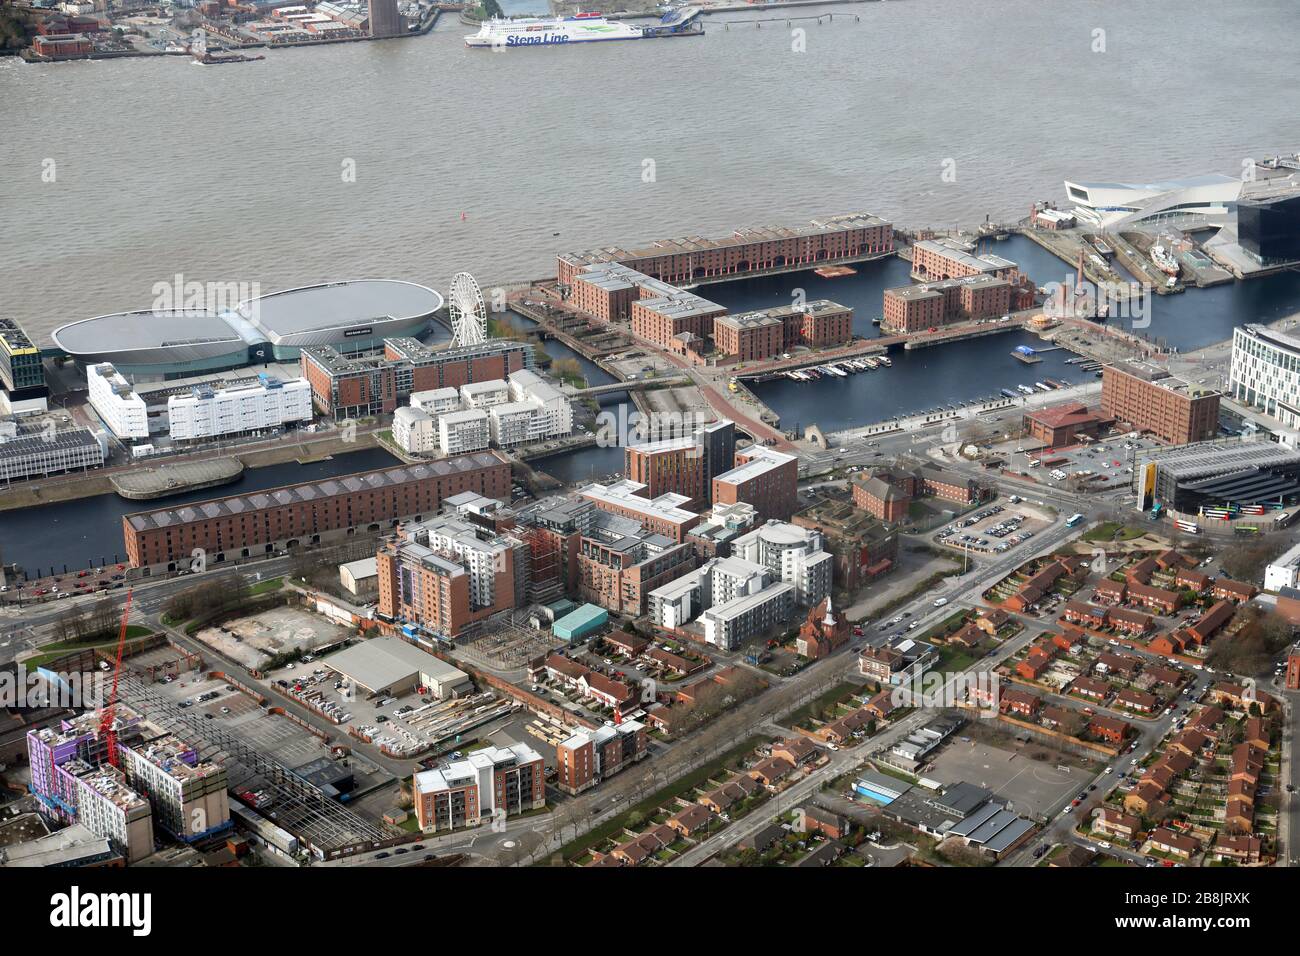 Vue aérienne sur la ville de Liverpool avec le Royal Albert Dock & M&S Bank Arena en avant-plan Banque D'Images